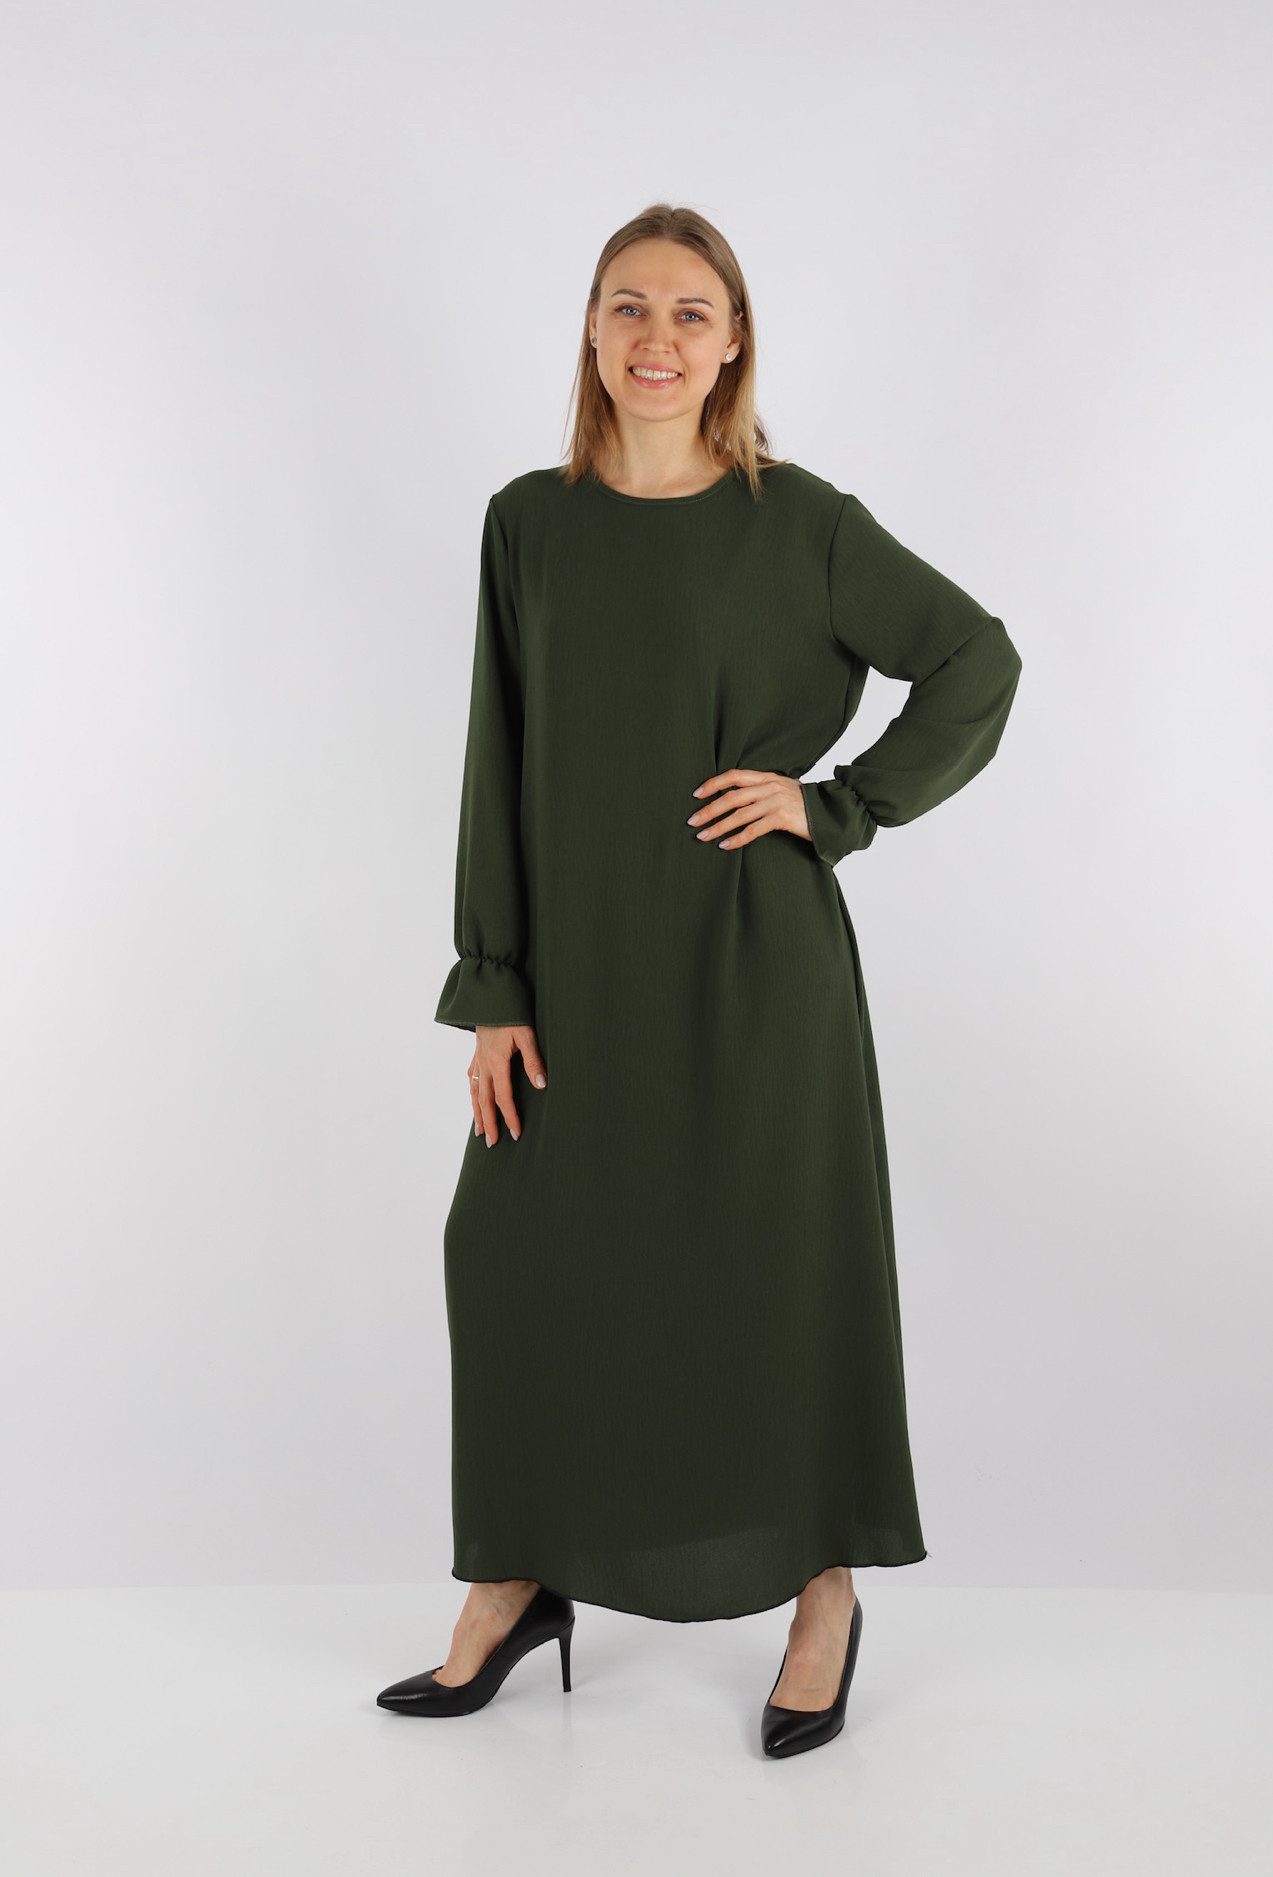 HELLO MISS Sommerkleid Beliebte Muslimische Kleid, Langarm, Abaya/Kopftuch Kleid in Unifarbe